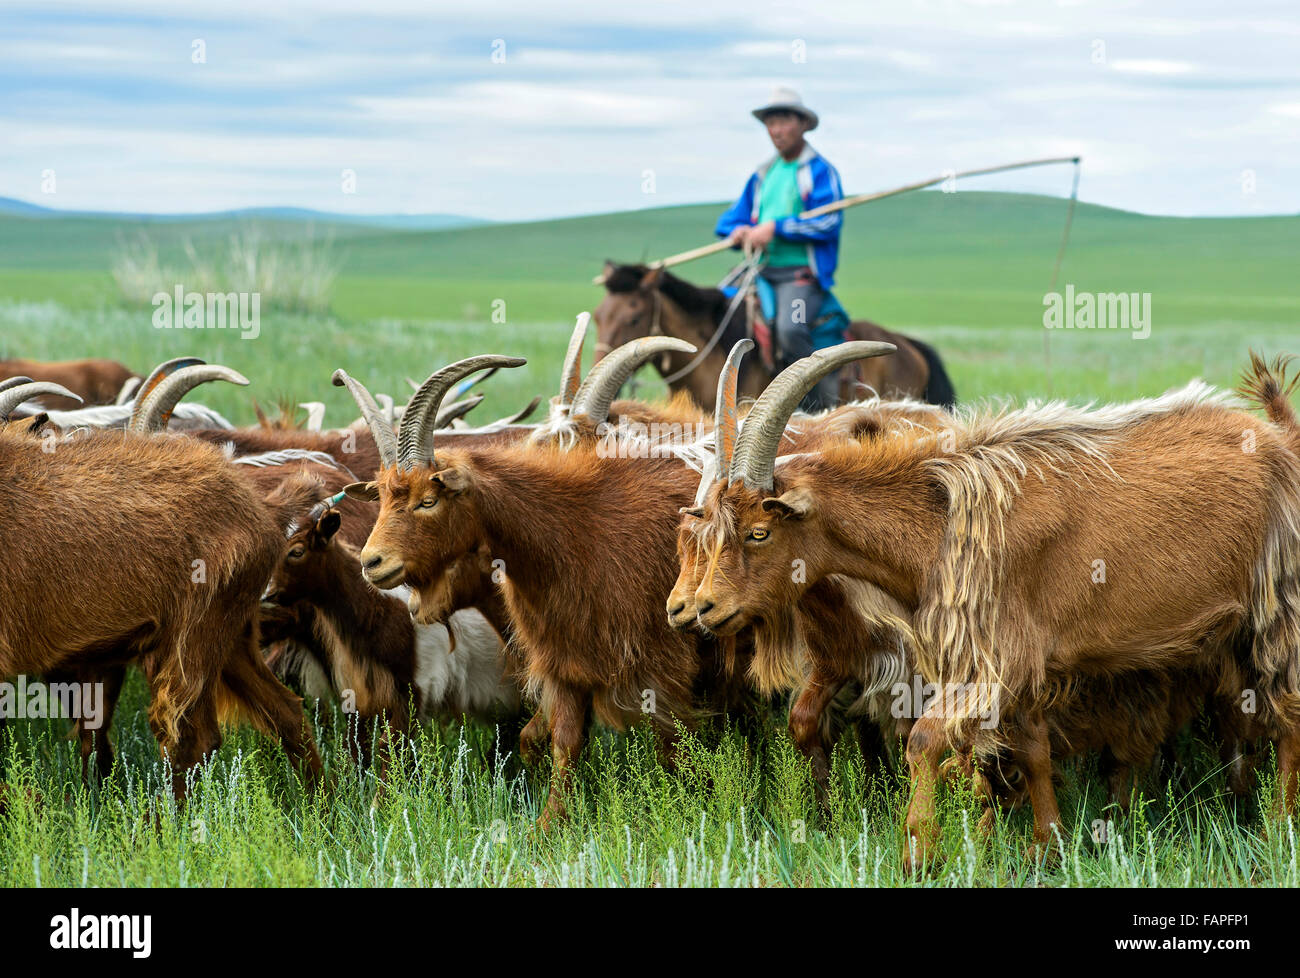 Pastores nómadas de Mongolia a caballo corrales su rebaño de cabras de cachemira, Dashinchilen, Bulgan Aimag, Mongolia Foto de stock